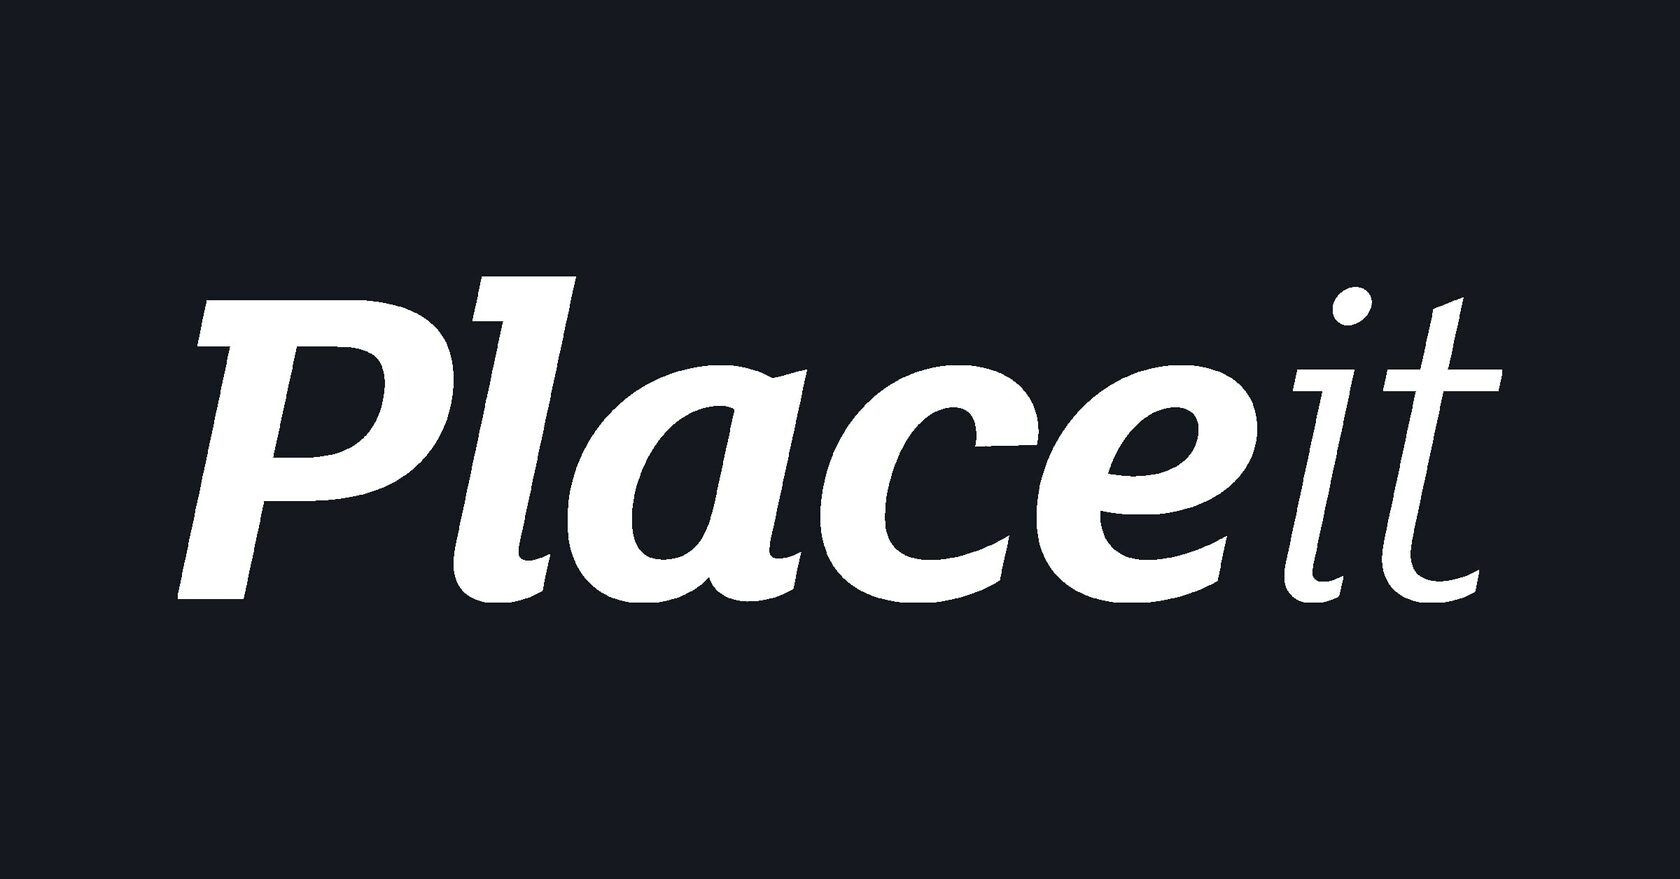 Download Placeit Placeit Logo Maker Placeit App Placeit Logos Placeit Mockups Placeit Reviews Placeit Images